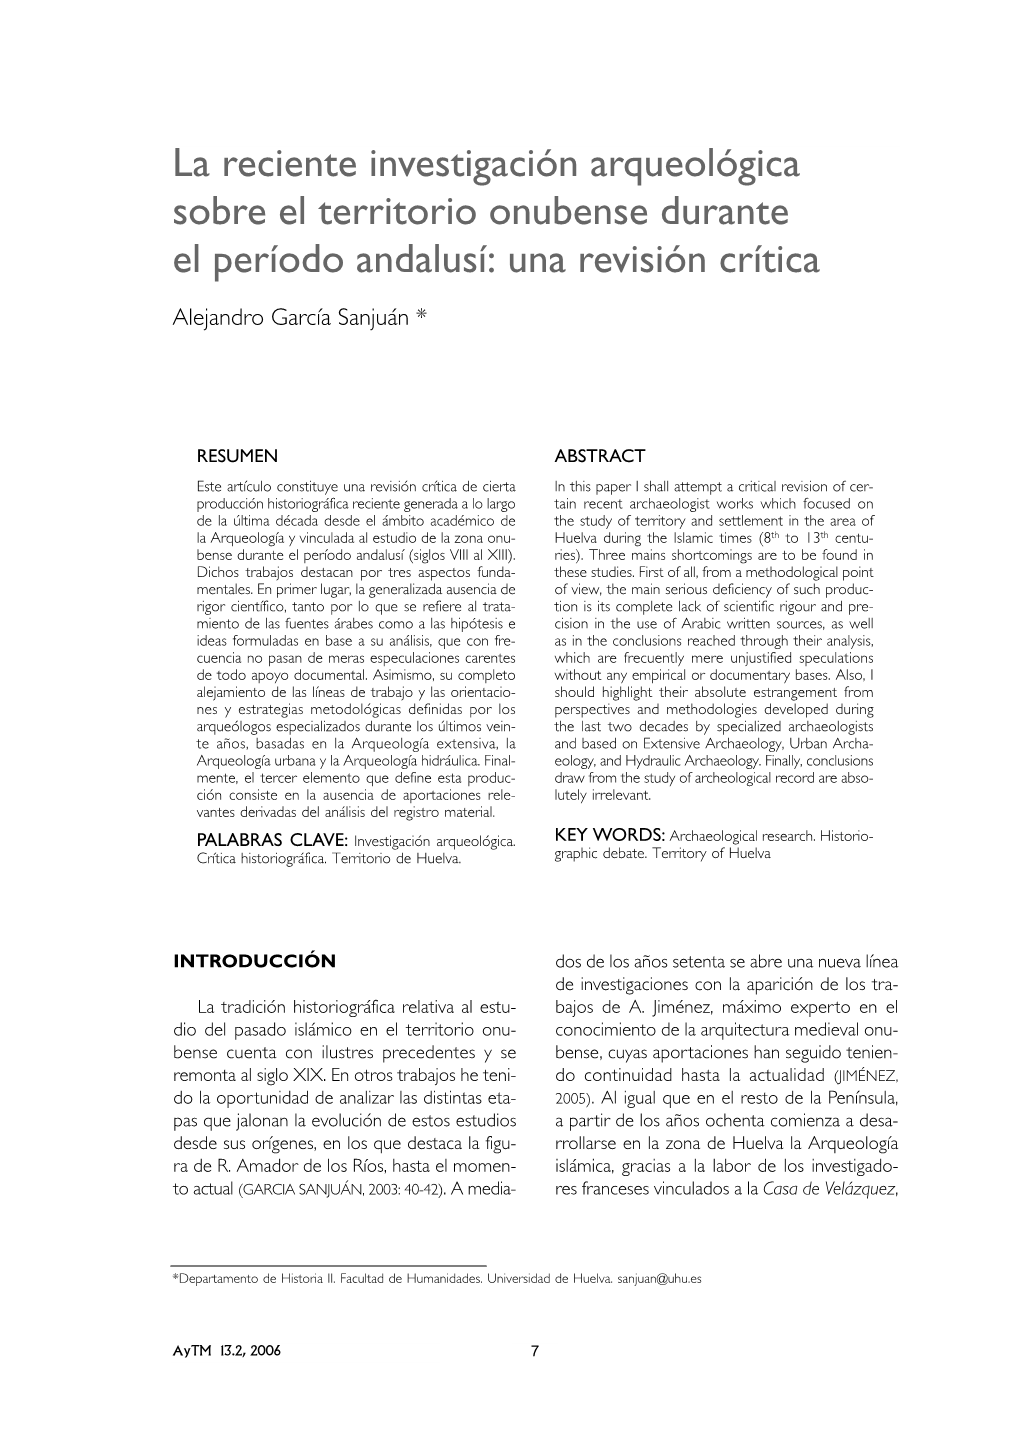 La Reciente Investigación Arqueológica Sobre El Territorio Onubense Durante El Periodo Andalusí